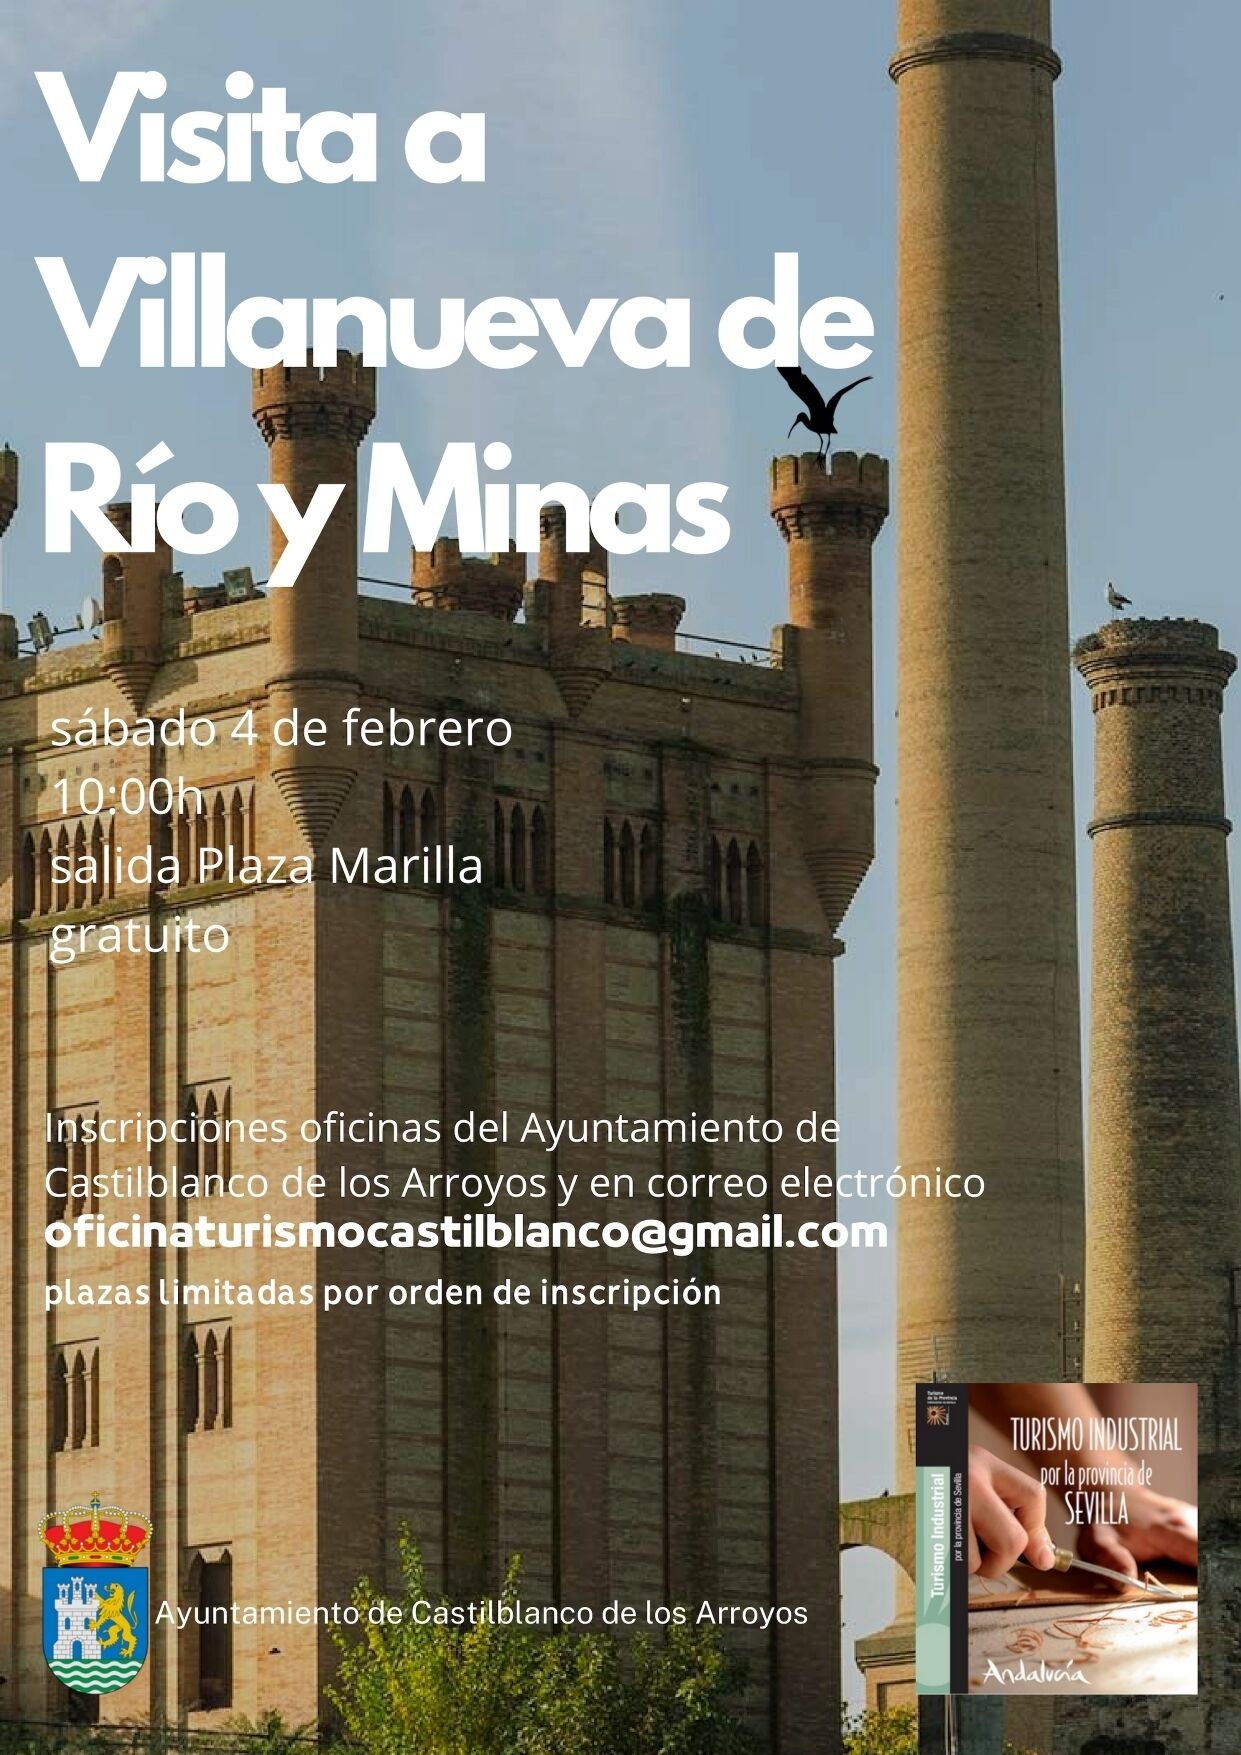 Visita Villanueva de Río y Minas (2)_page-0001